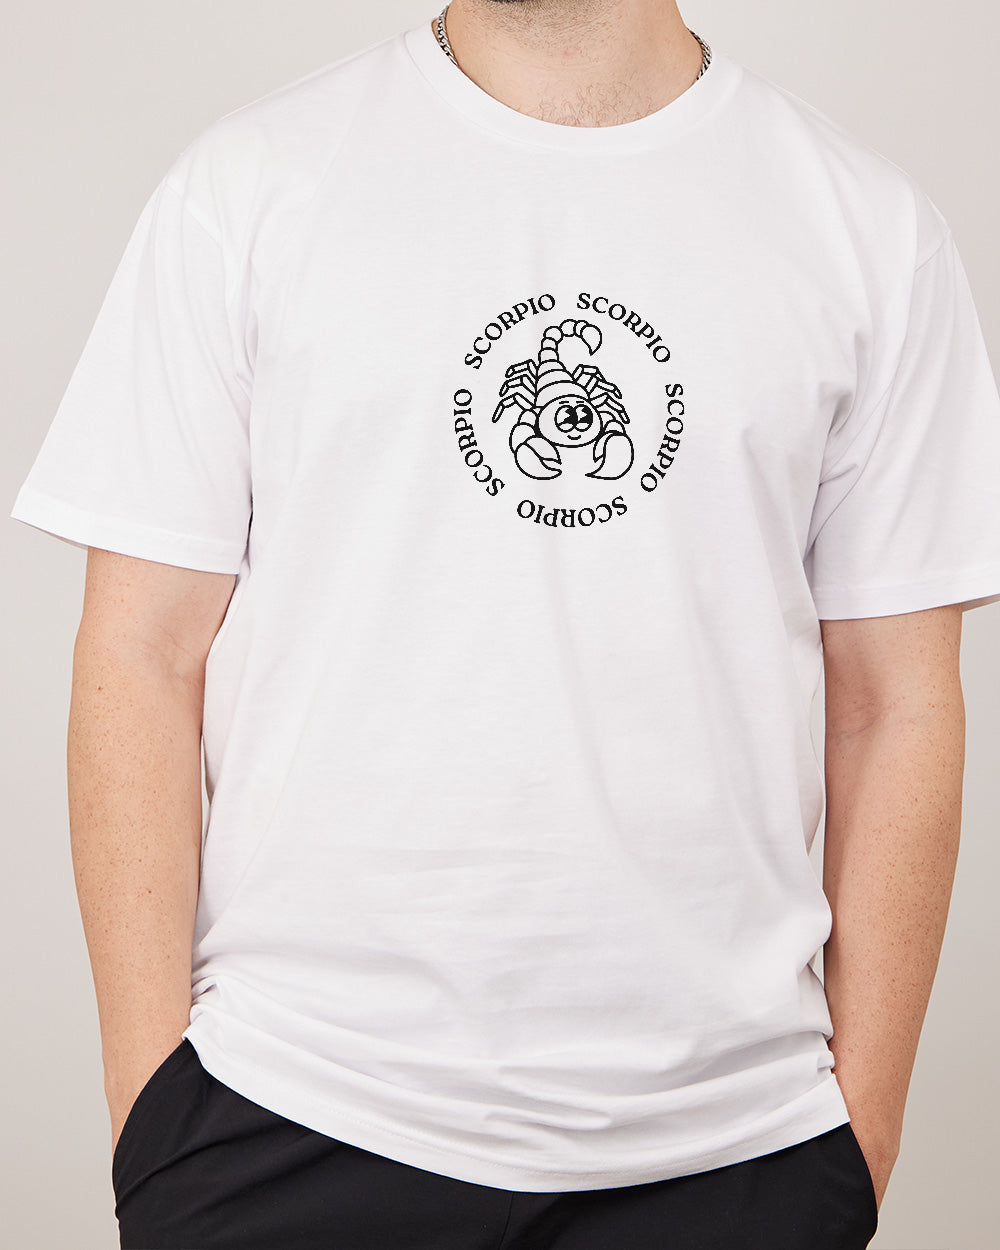 Scorpio T-Shirt Australia Online #colour_white